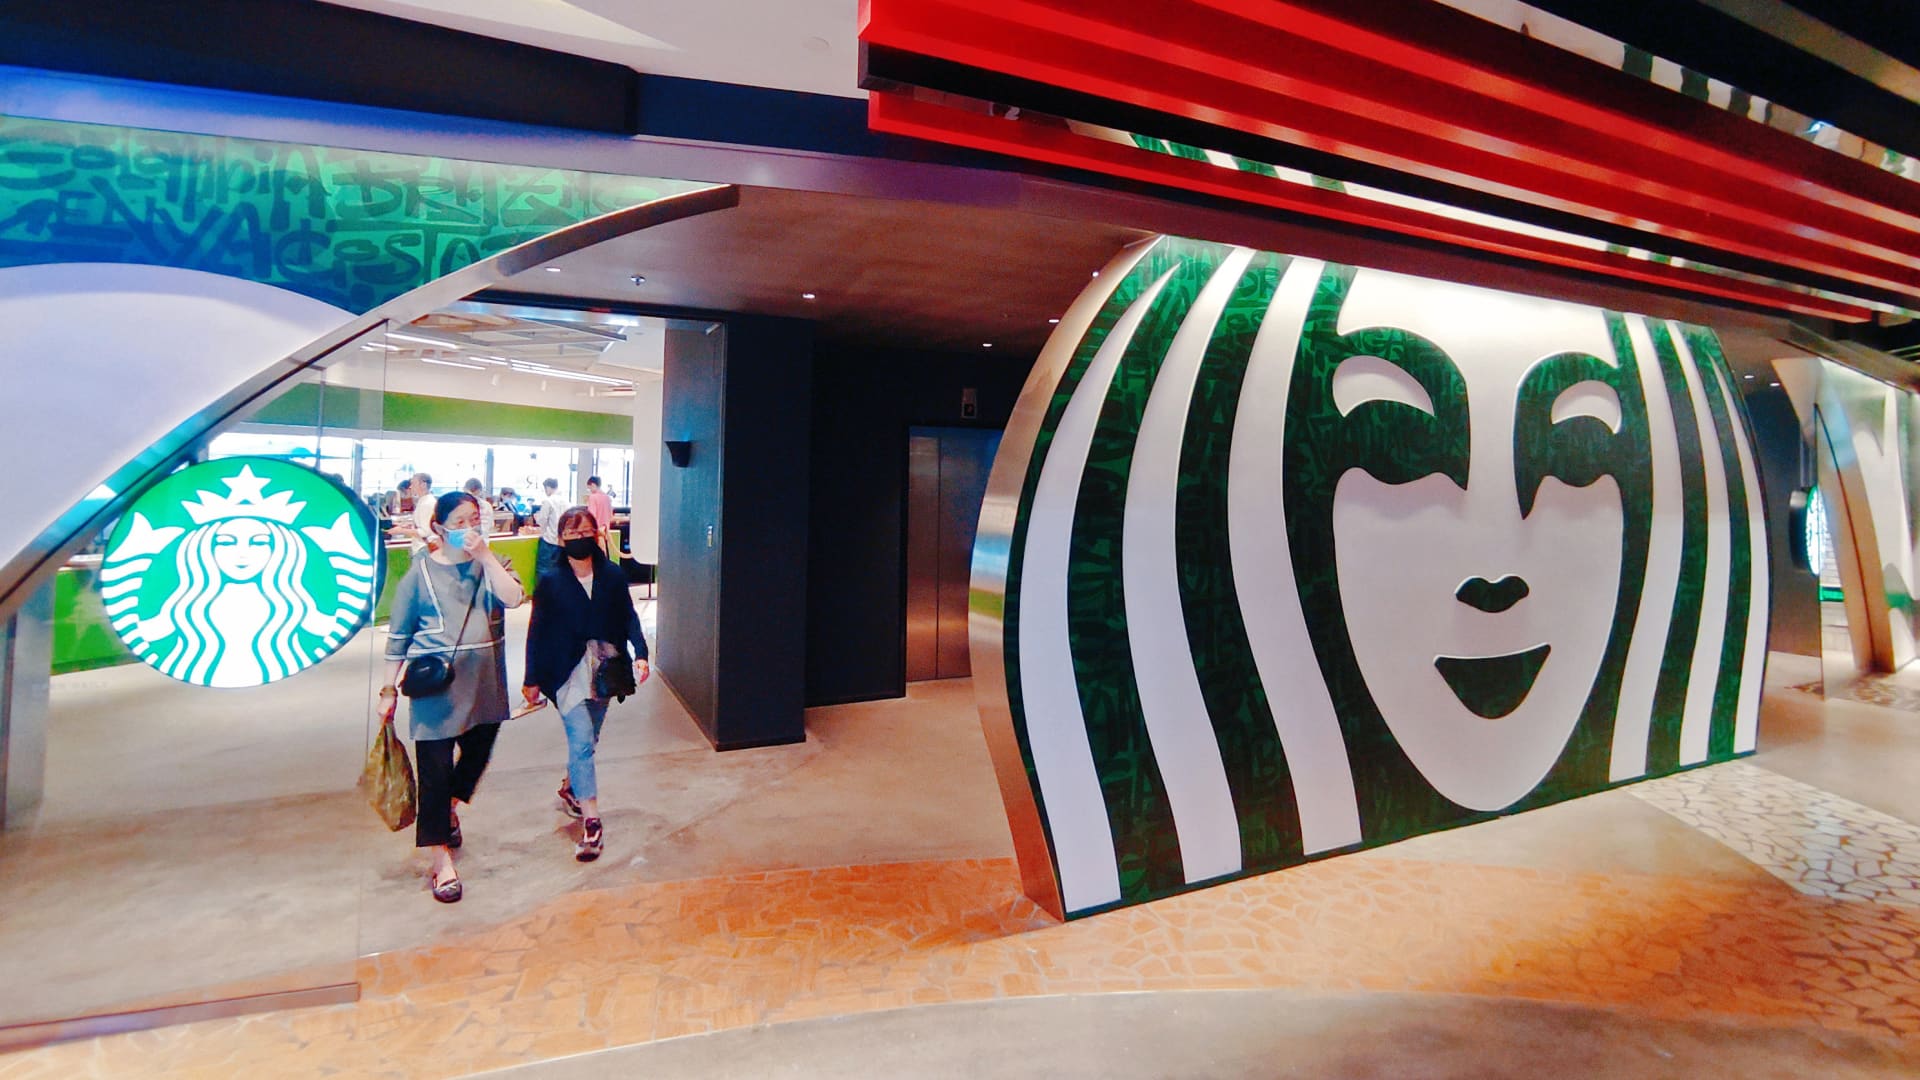 Starbucks (SBUX) Q4 2022 earnings